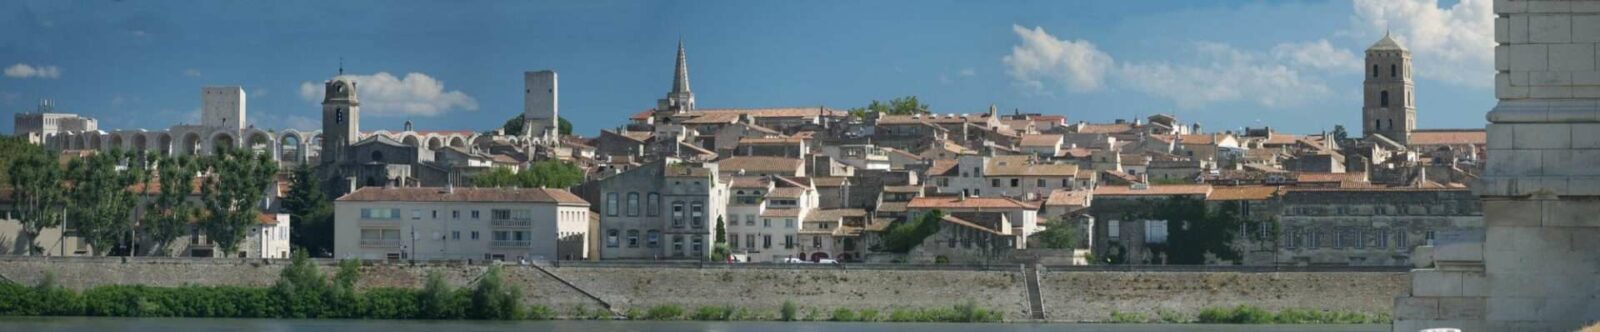 France Arles Sur Rhone Panorama-130729-2